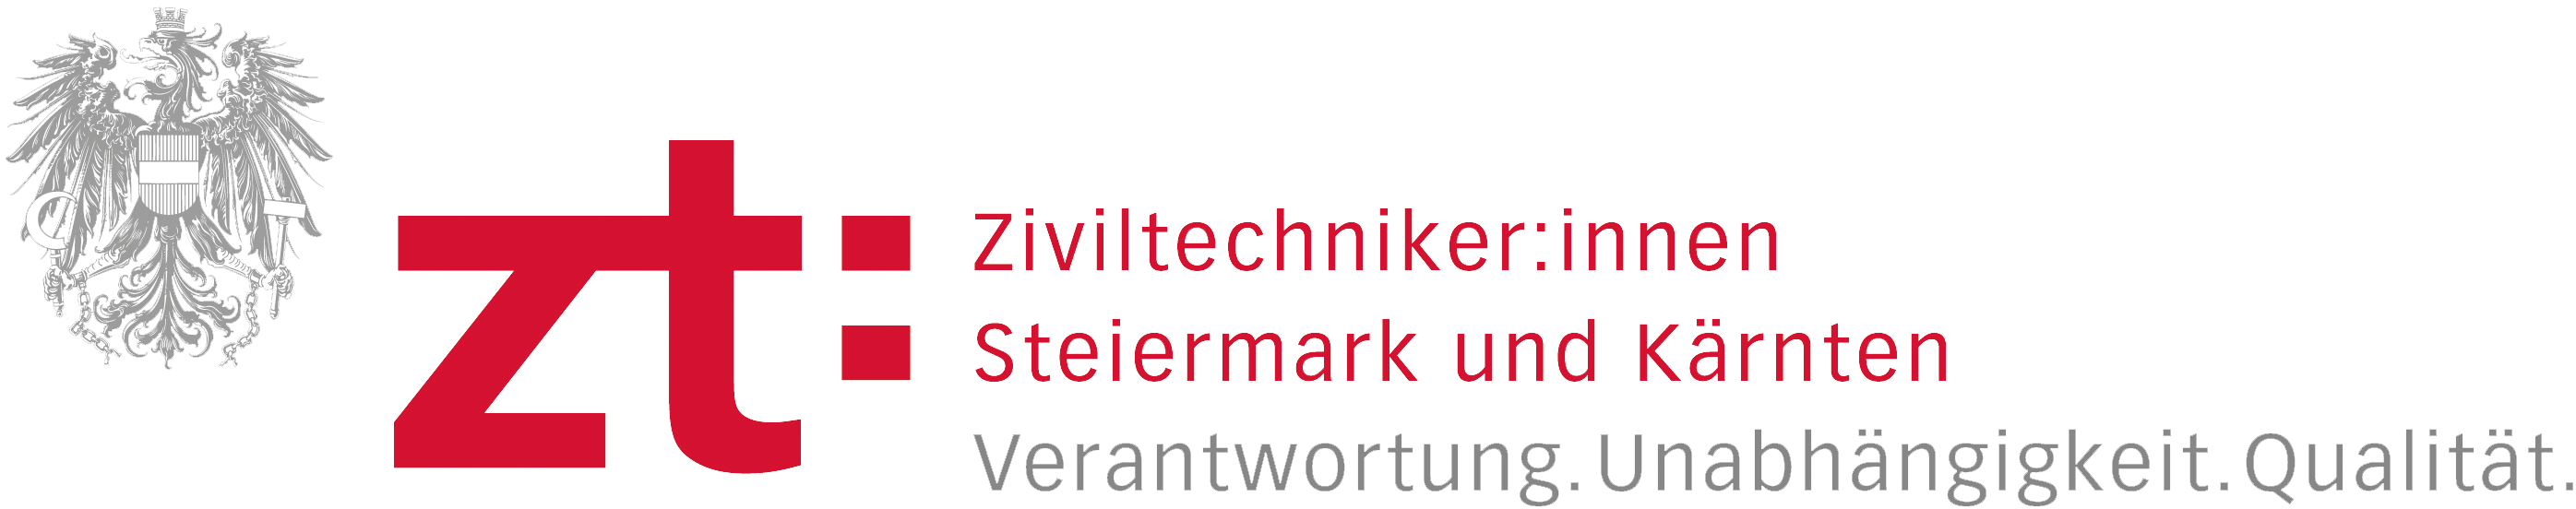 Ziviltechniker:innen Steiermark & Kärnten